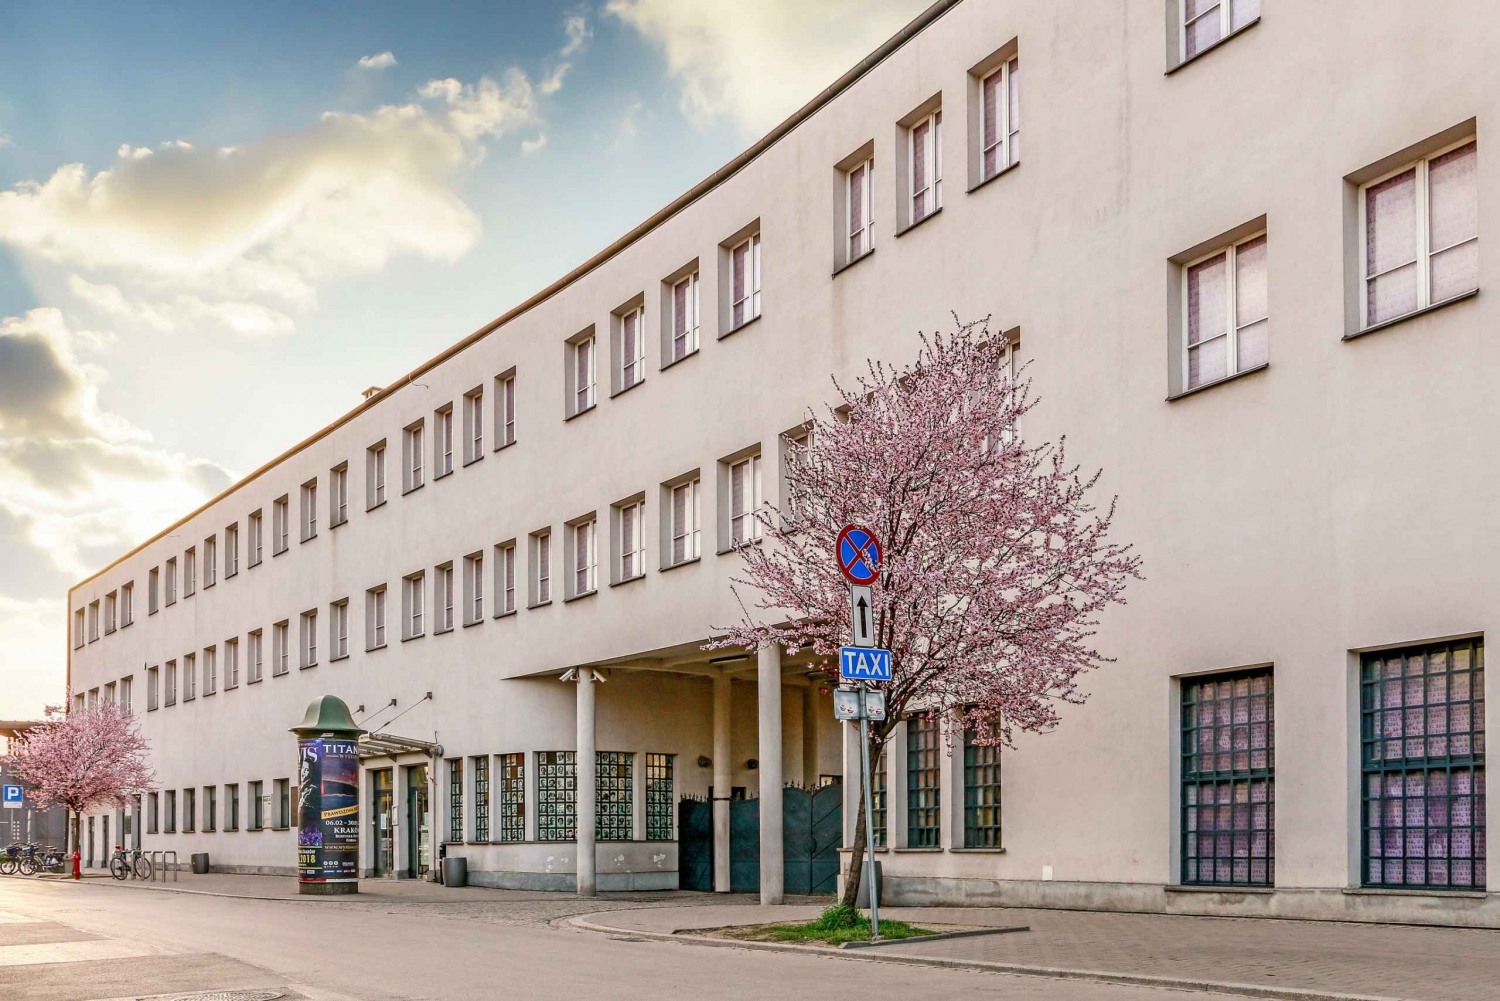 Krakow: Schindler's Factory Skip-the-Line Ticket